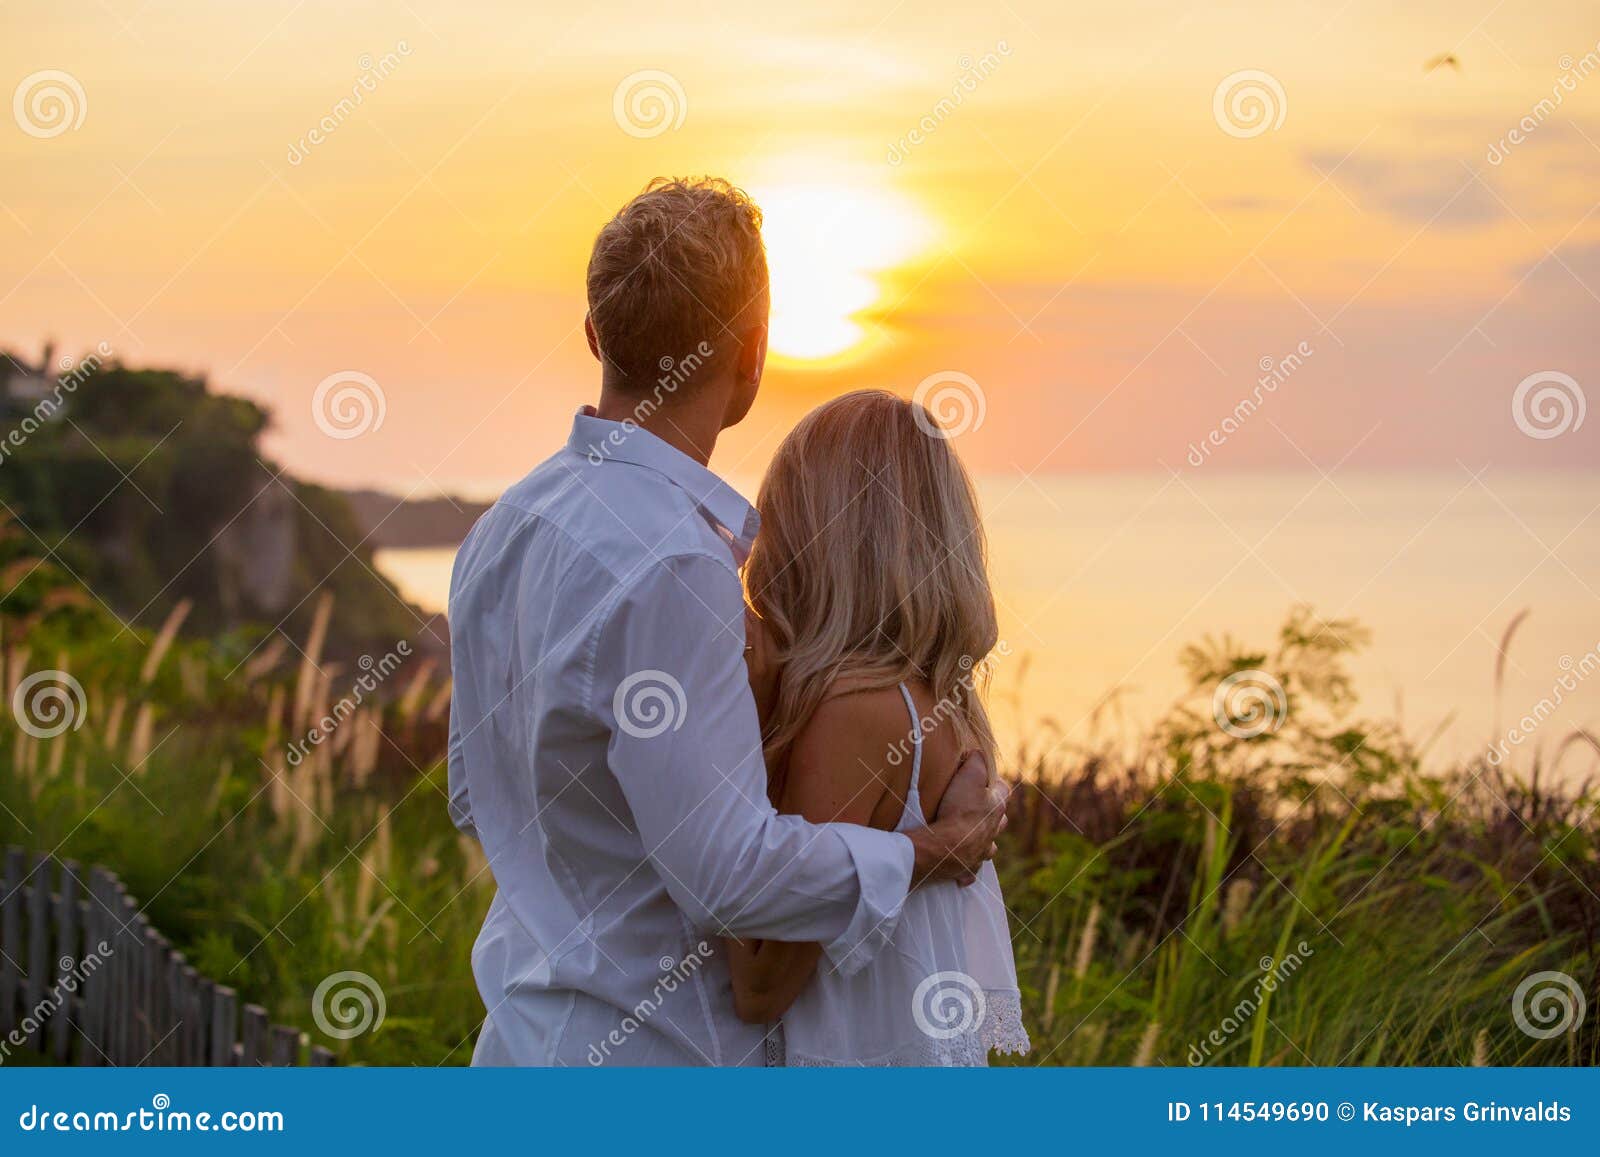 Romantische Paare Die Sonnenuntergang Betrachten Stockfoto Bild Von Betrachten Sonnenuntergang